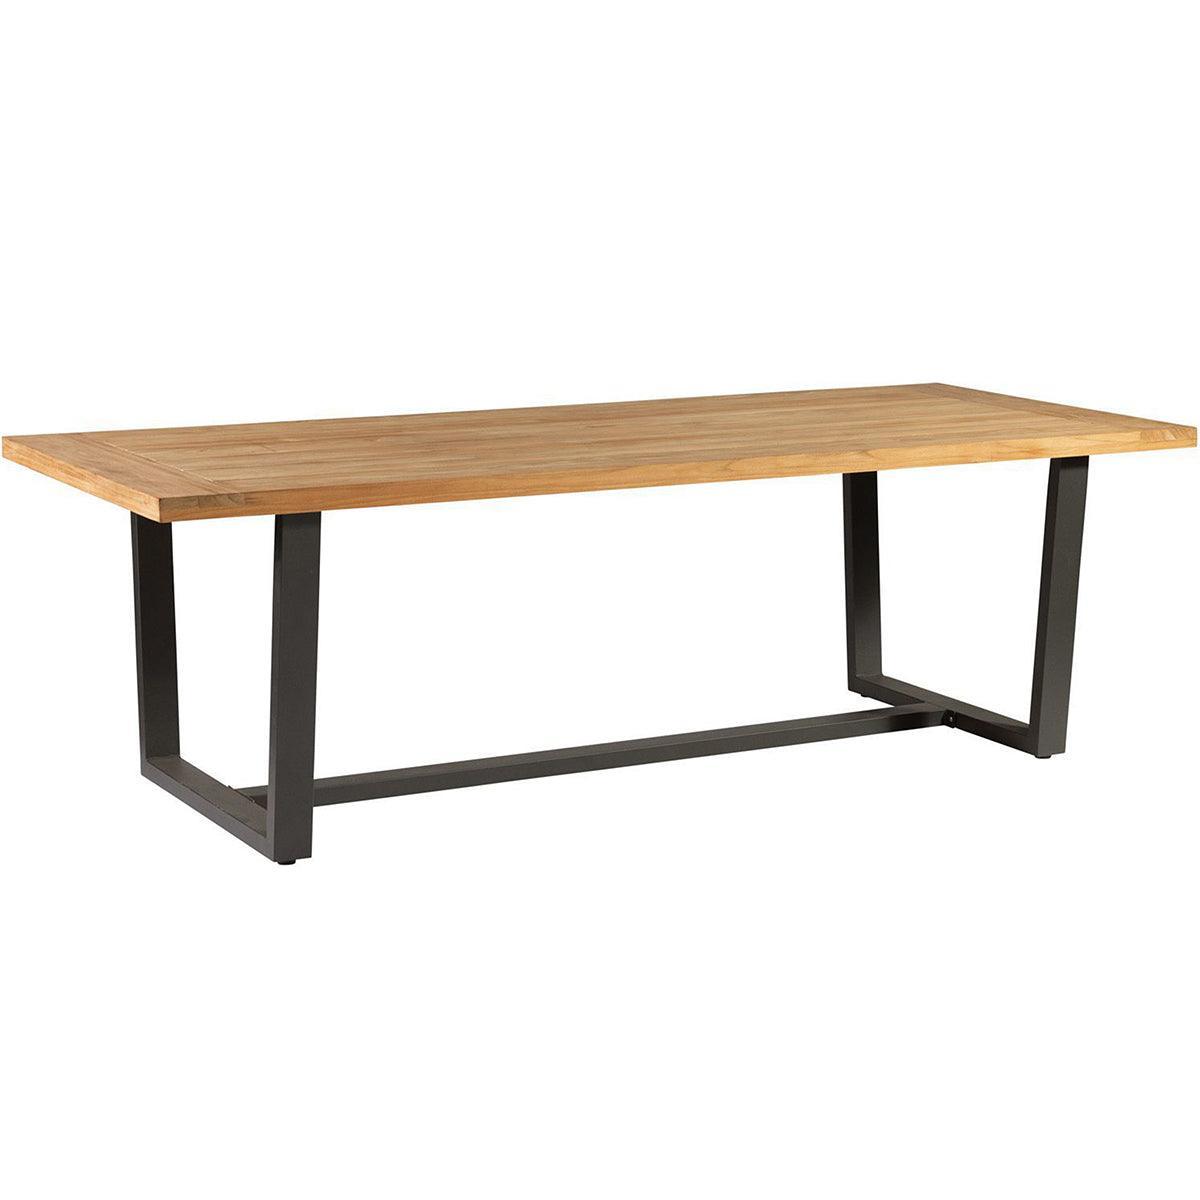 Murano Teak Wood Garden Table - WOO .Design